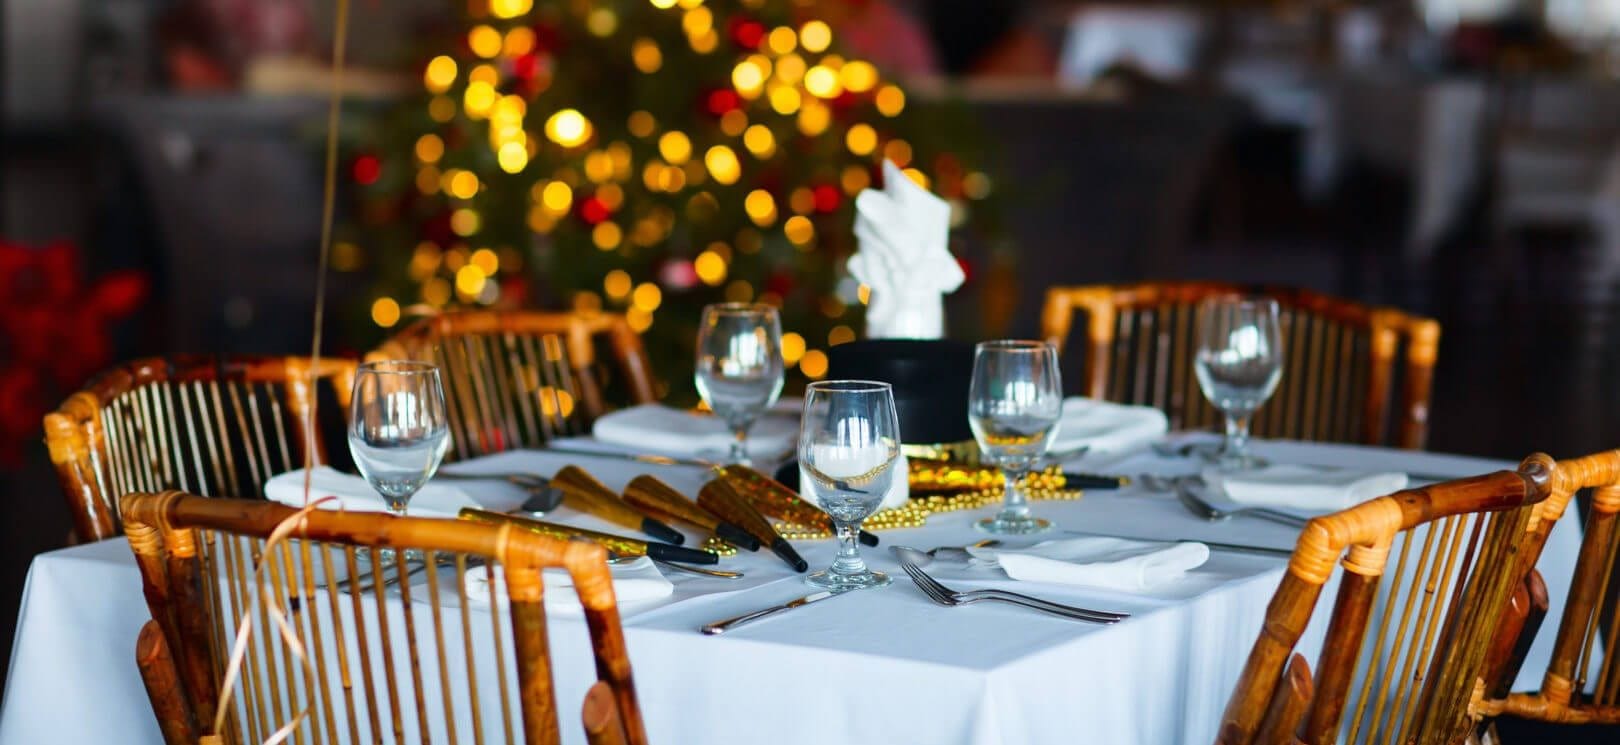 The Best NJ Restaurants Open on Christmas